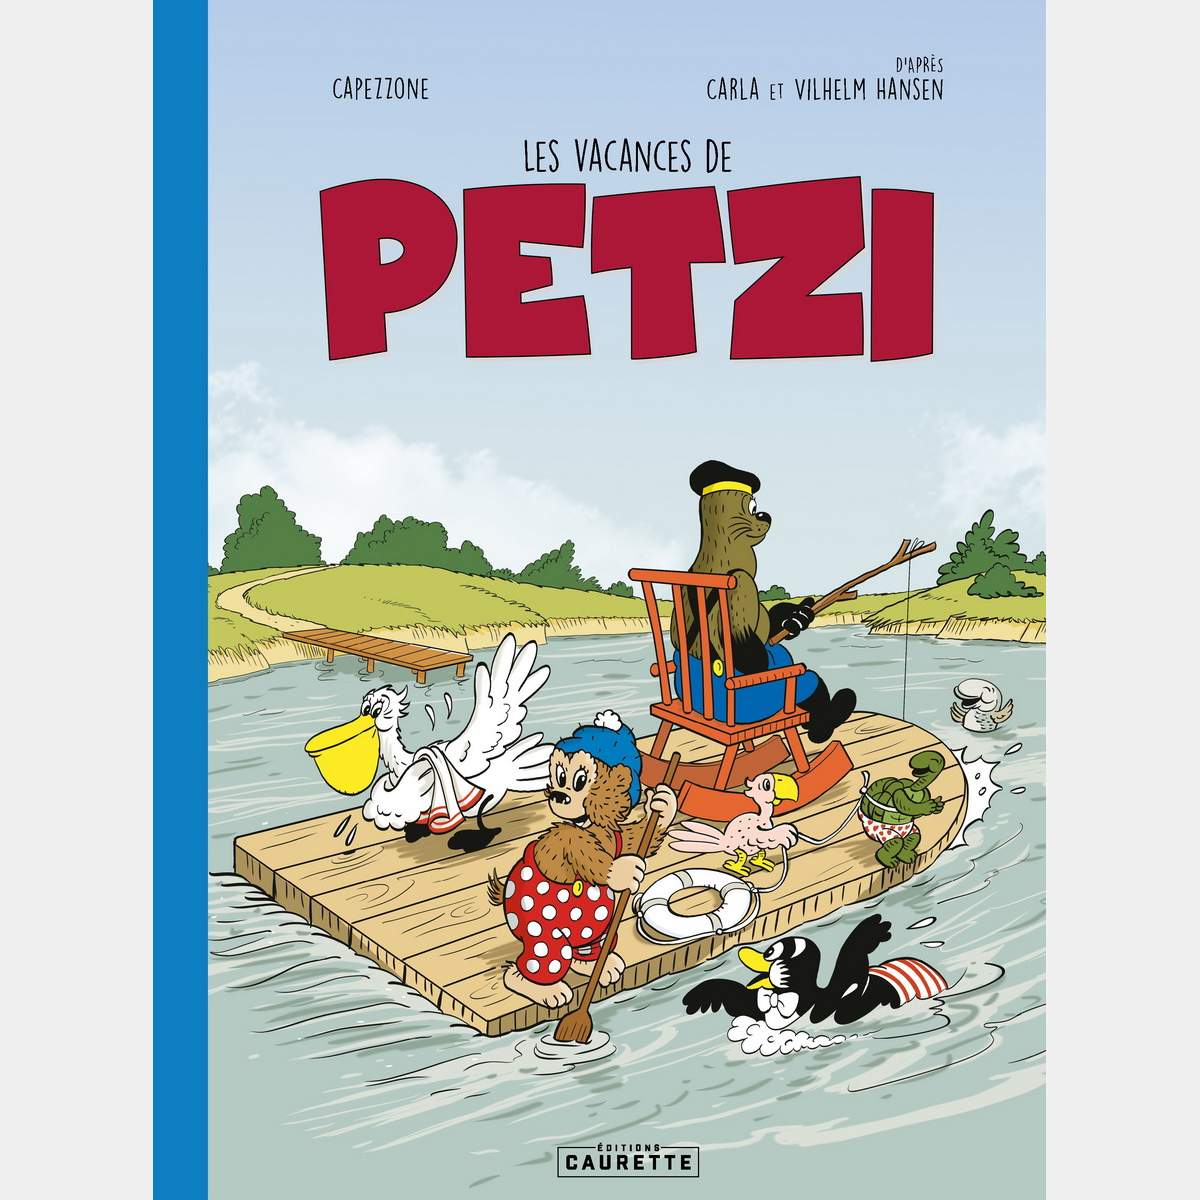 Les vacances de Petzi